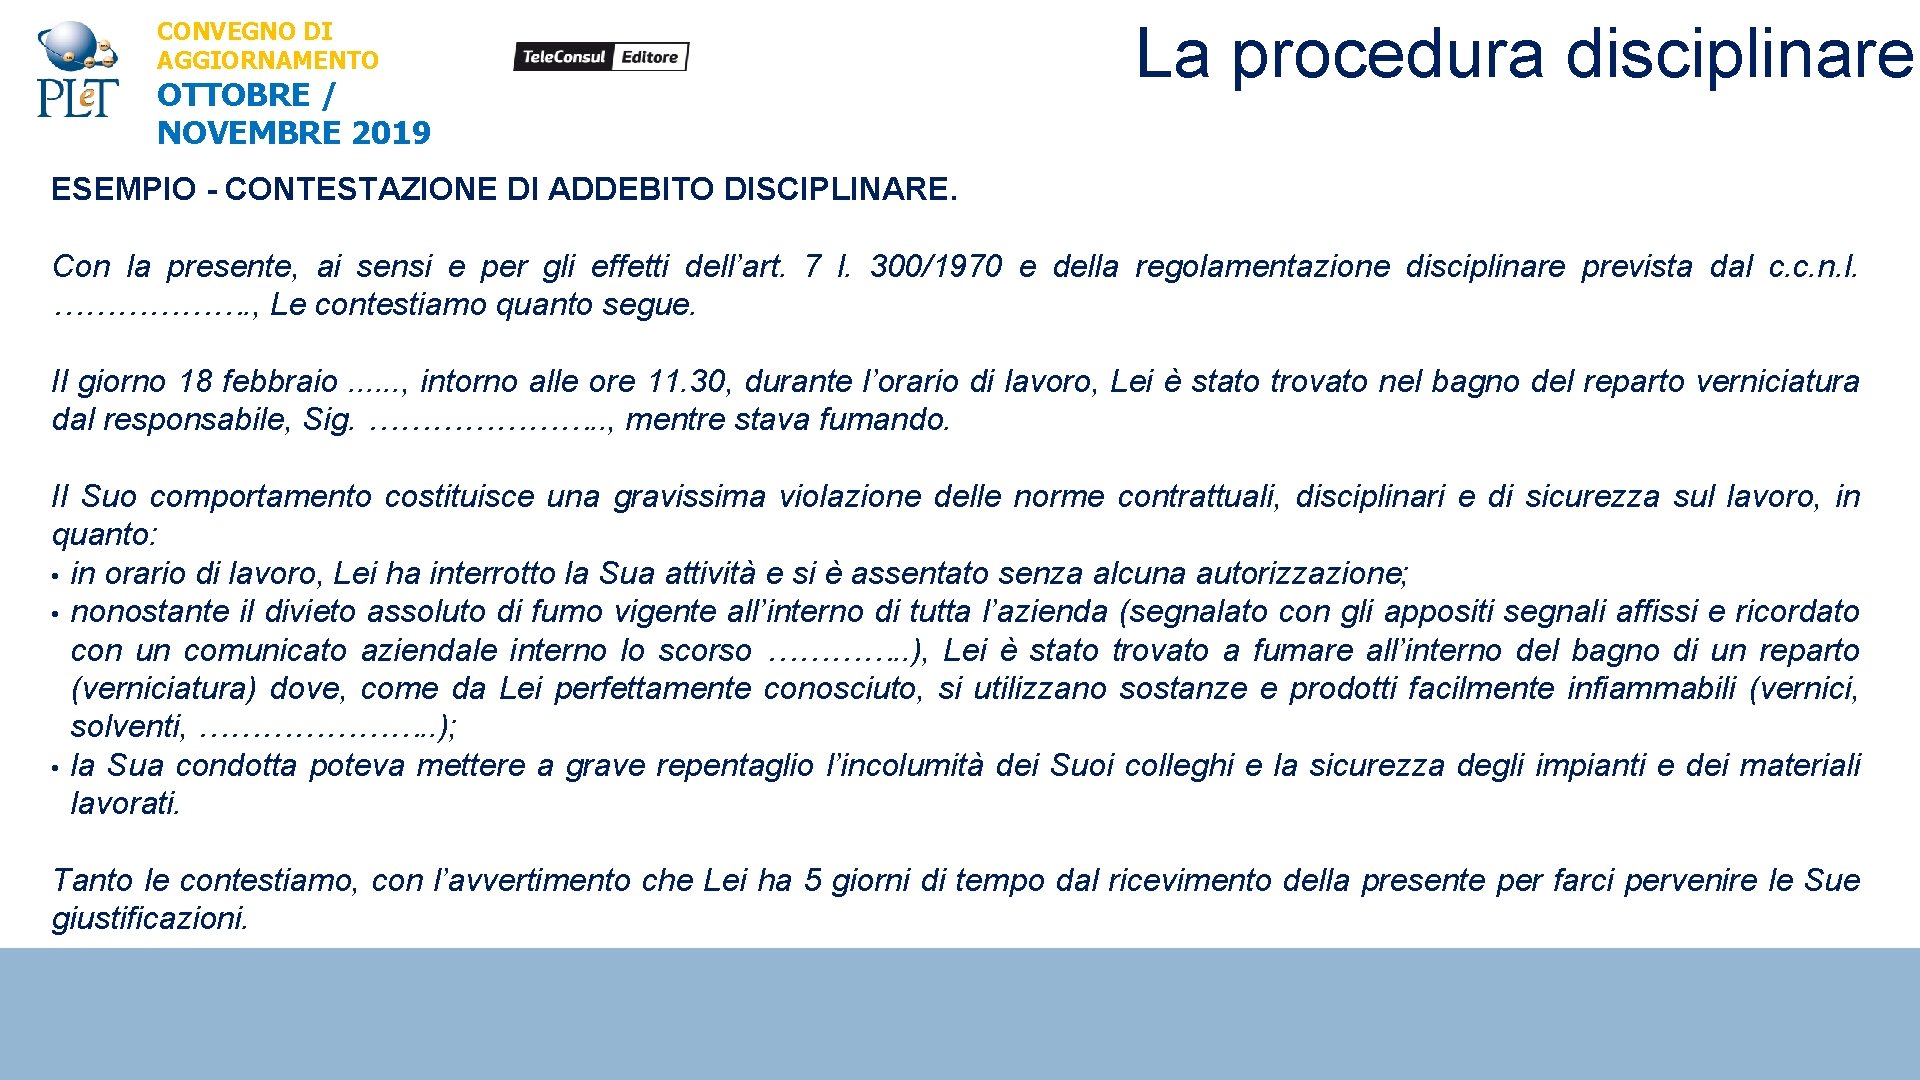 CONVEGNO DI AGGIORNAMENTO OTTOBRE / NOVEMBRE 2019 La procedura disciplinare ESEMPIO - CONTESTAZIONE DI